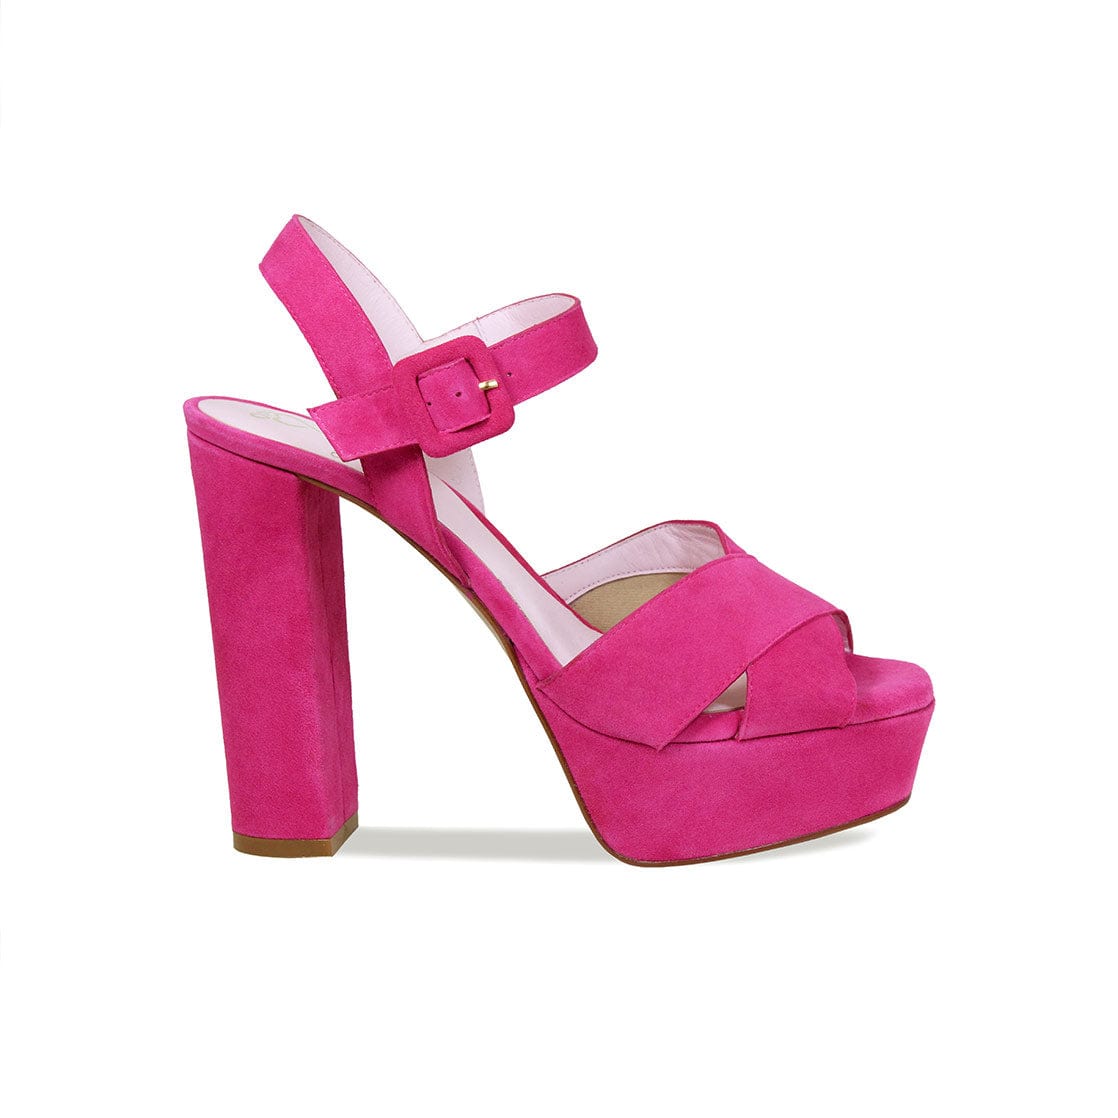 schuh Exclusive Sia platform heeled sandals in hot pink | ASOS